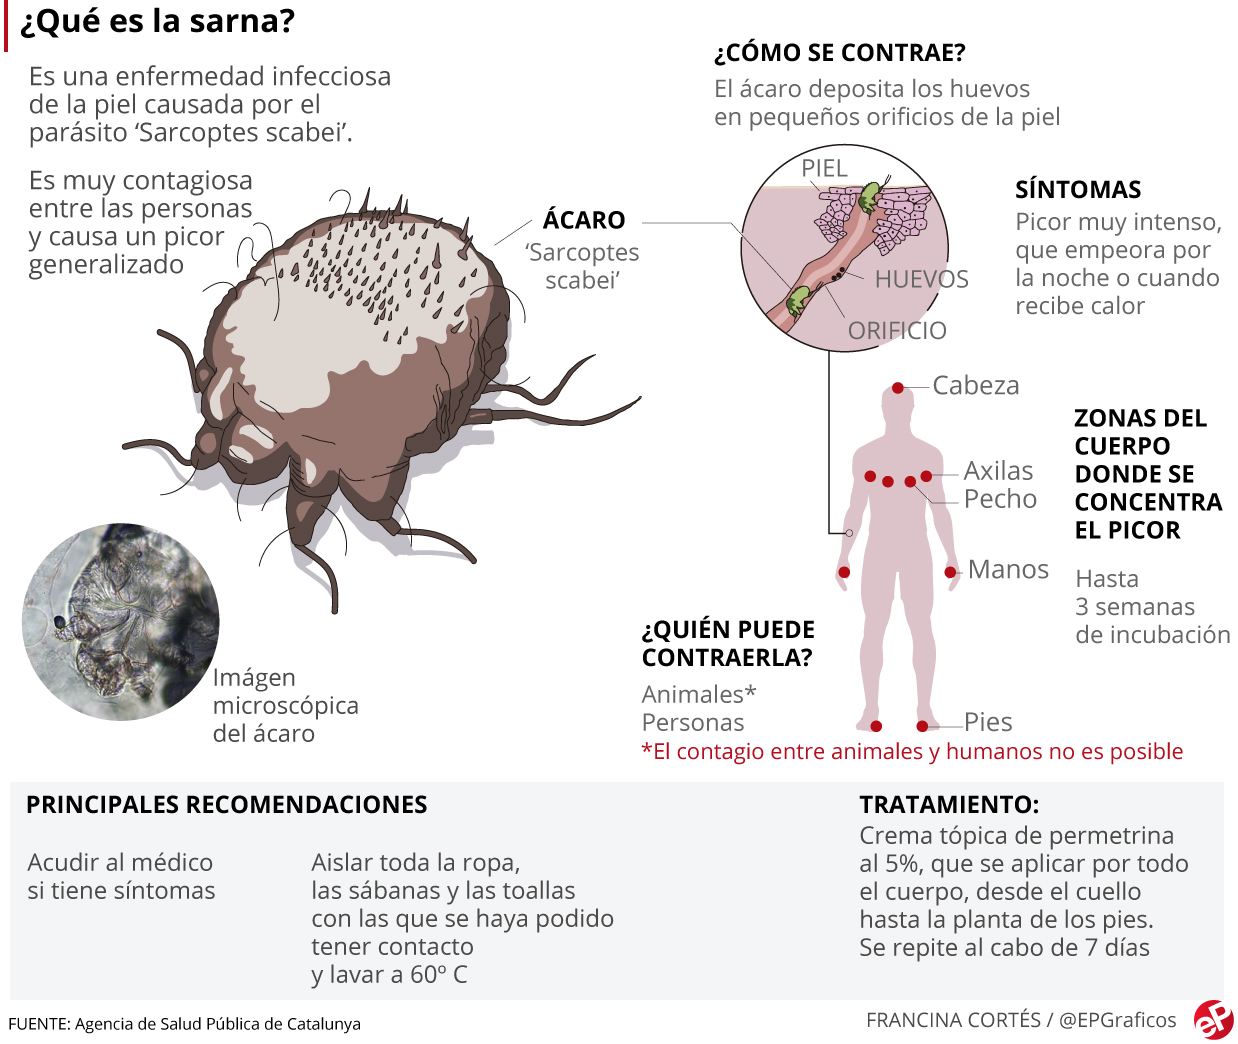 Los casos de sarna se multiplican en España: ¿Cómo evitar el contagio?